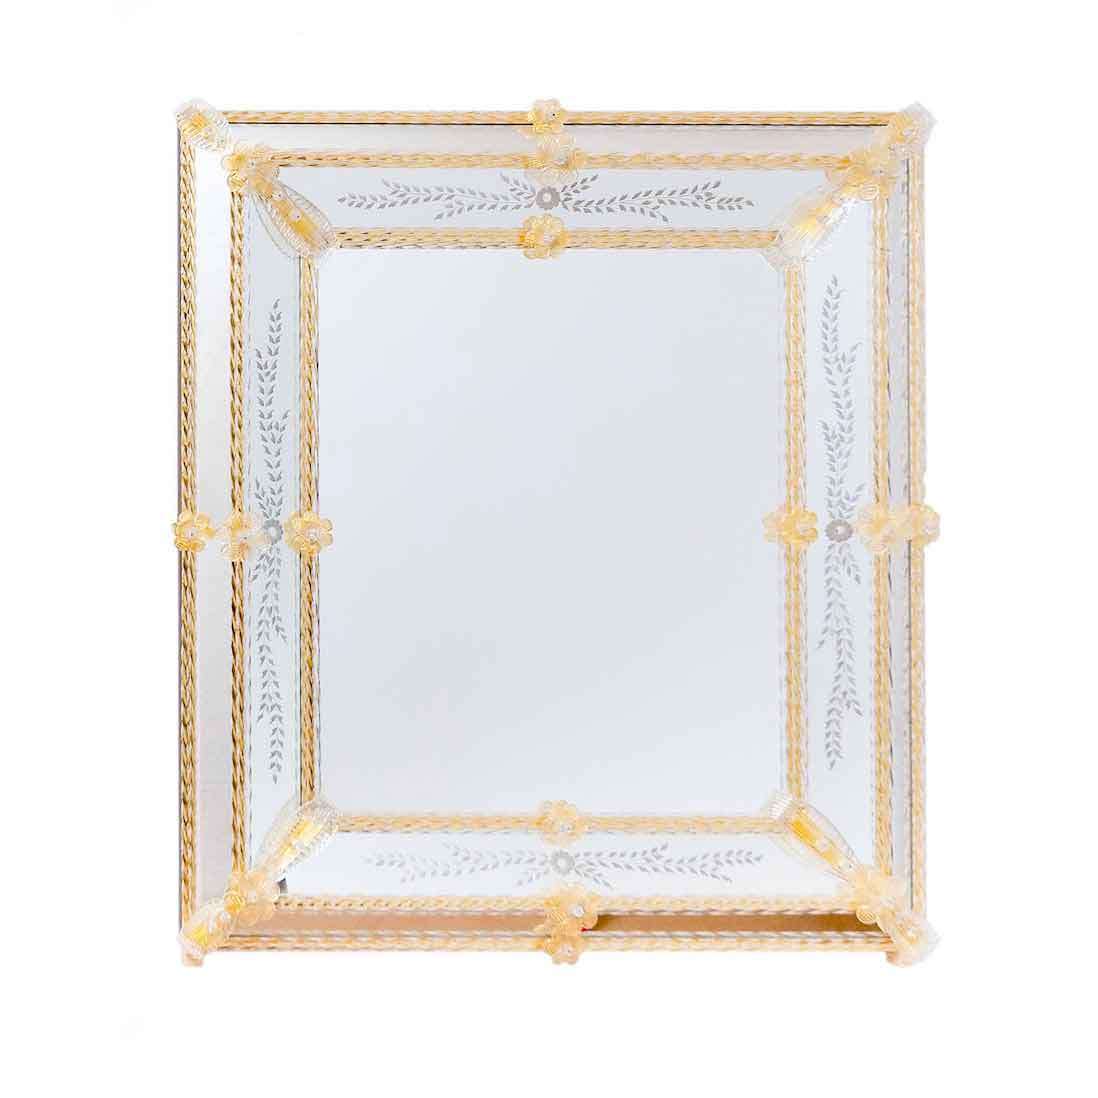 specchio veneziano rettangolare con fasce incise a mano e canne, foglie e fiori in vetro di murano di colore cristallo su fondo oro